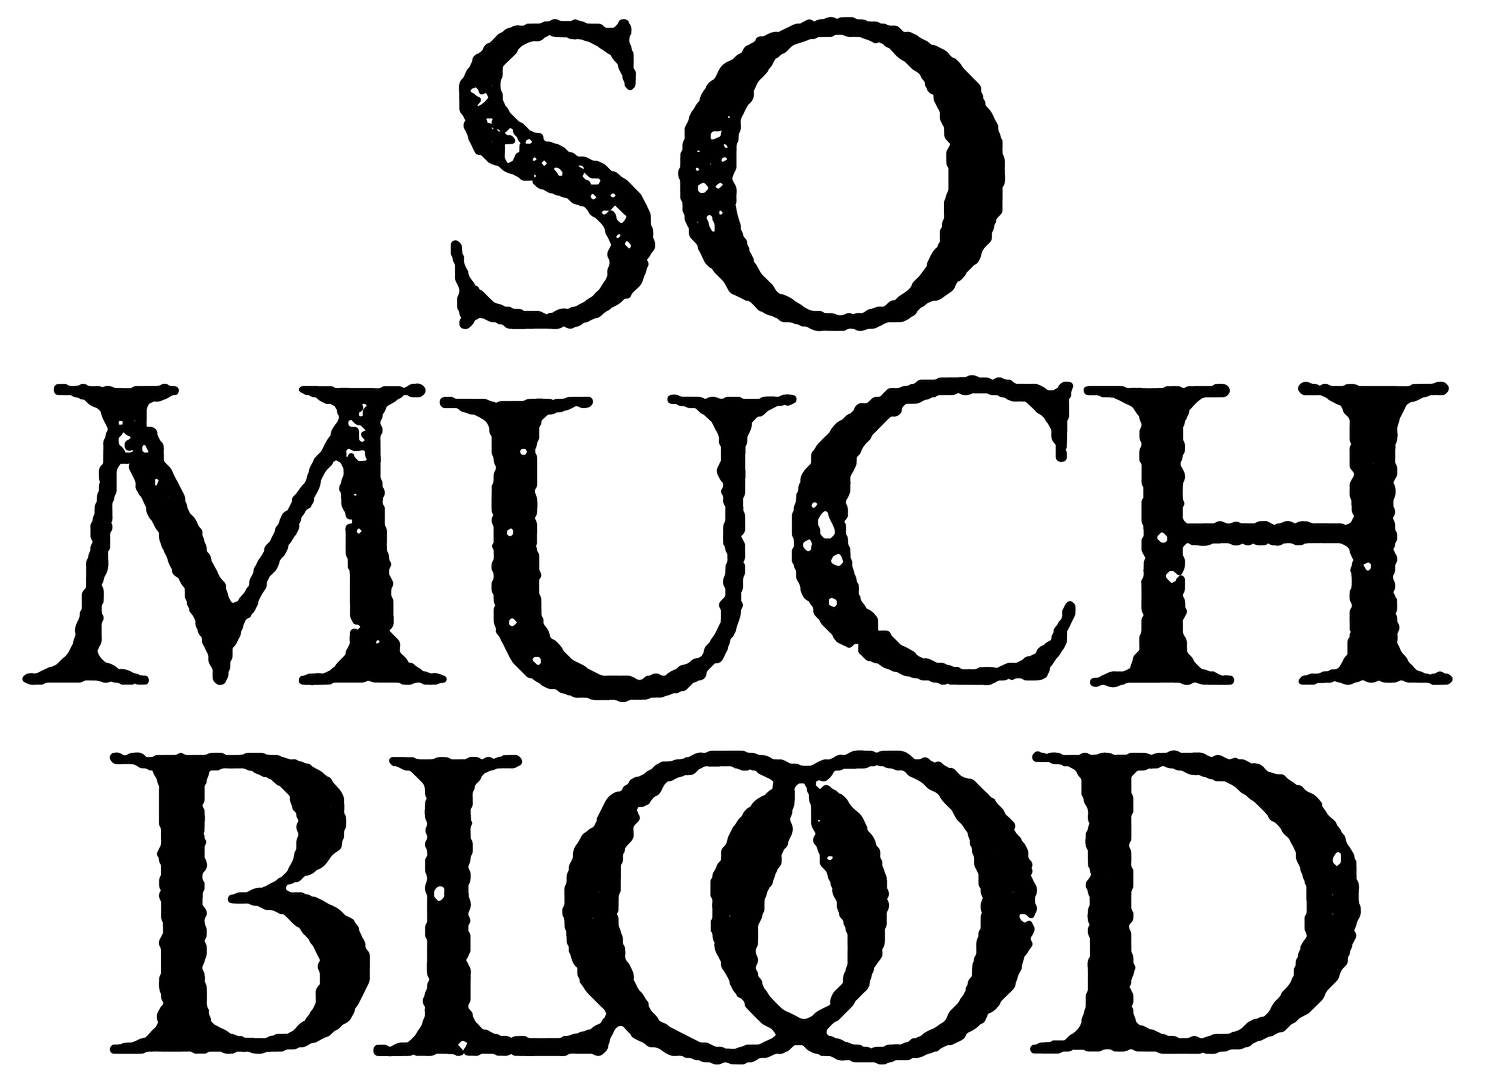 SO MUCH BLOOD